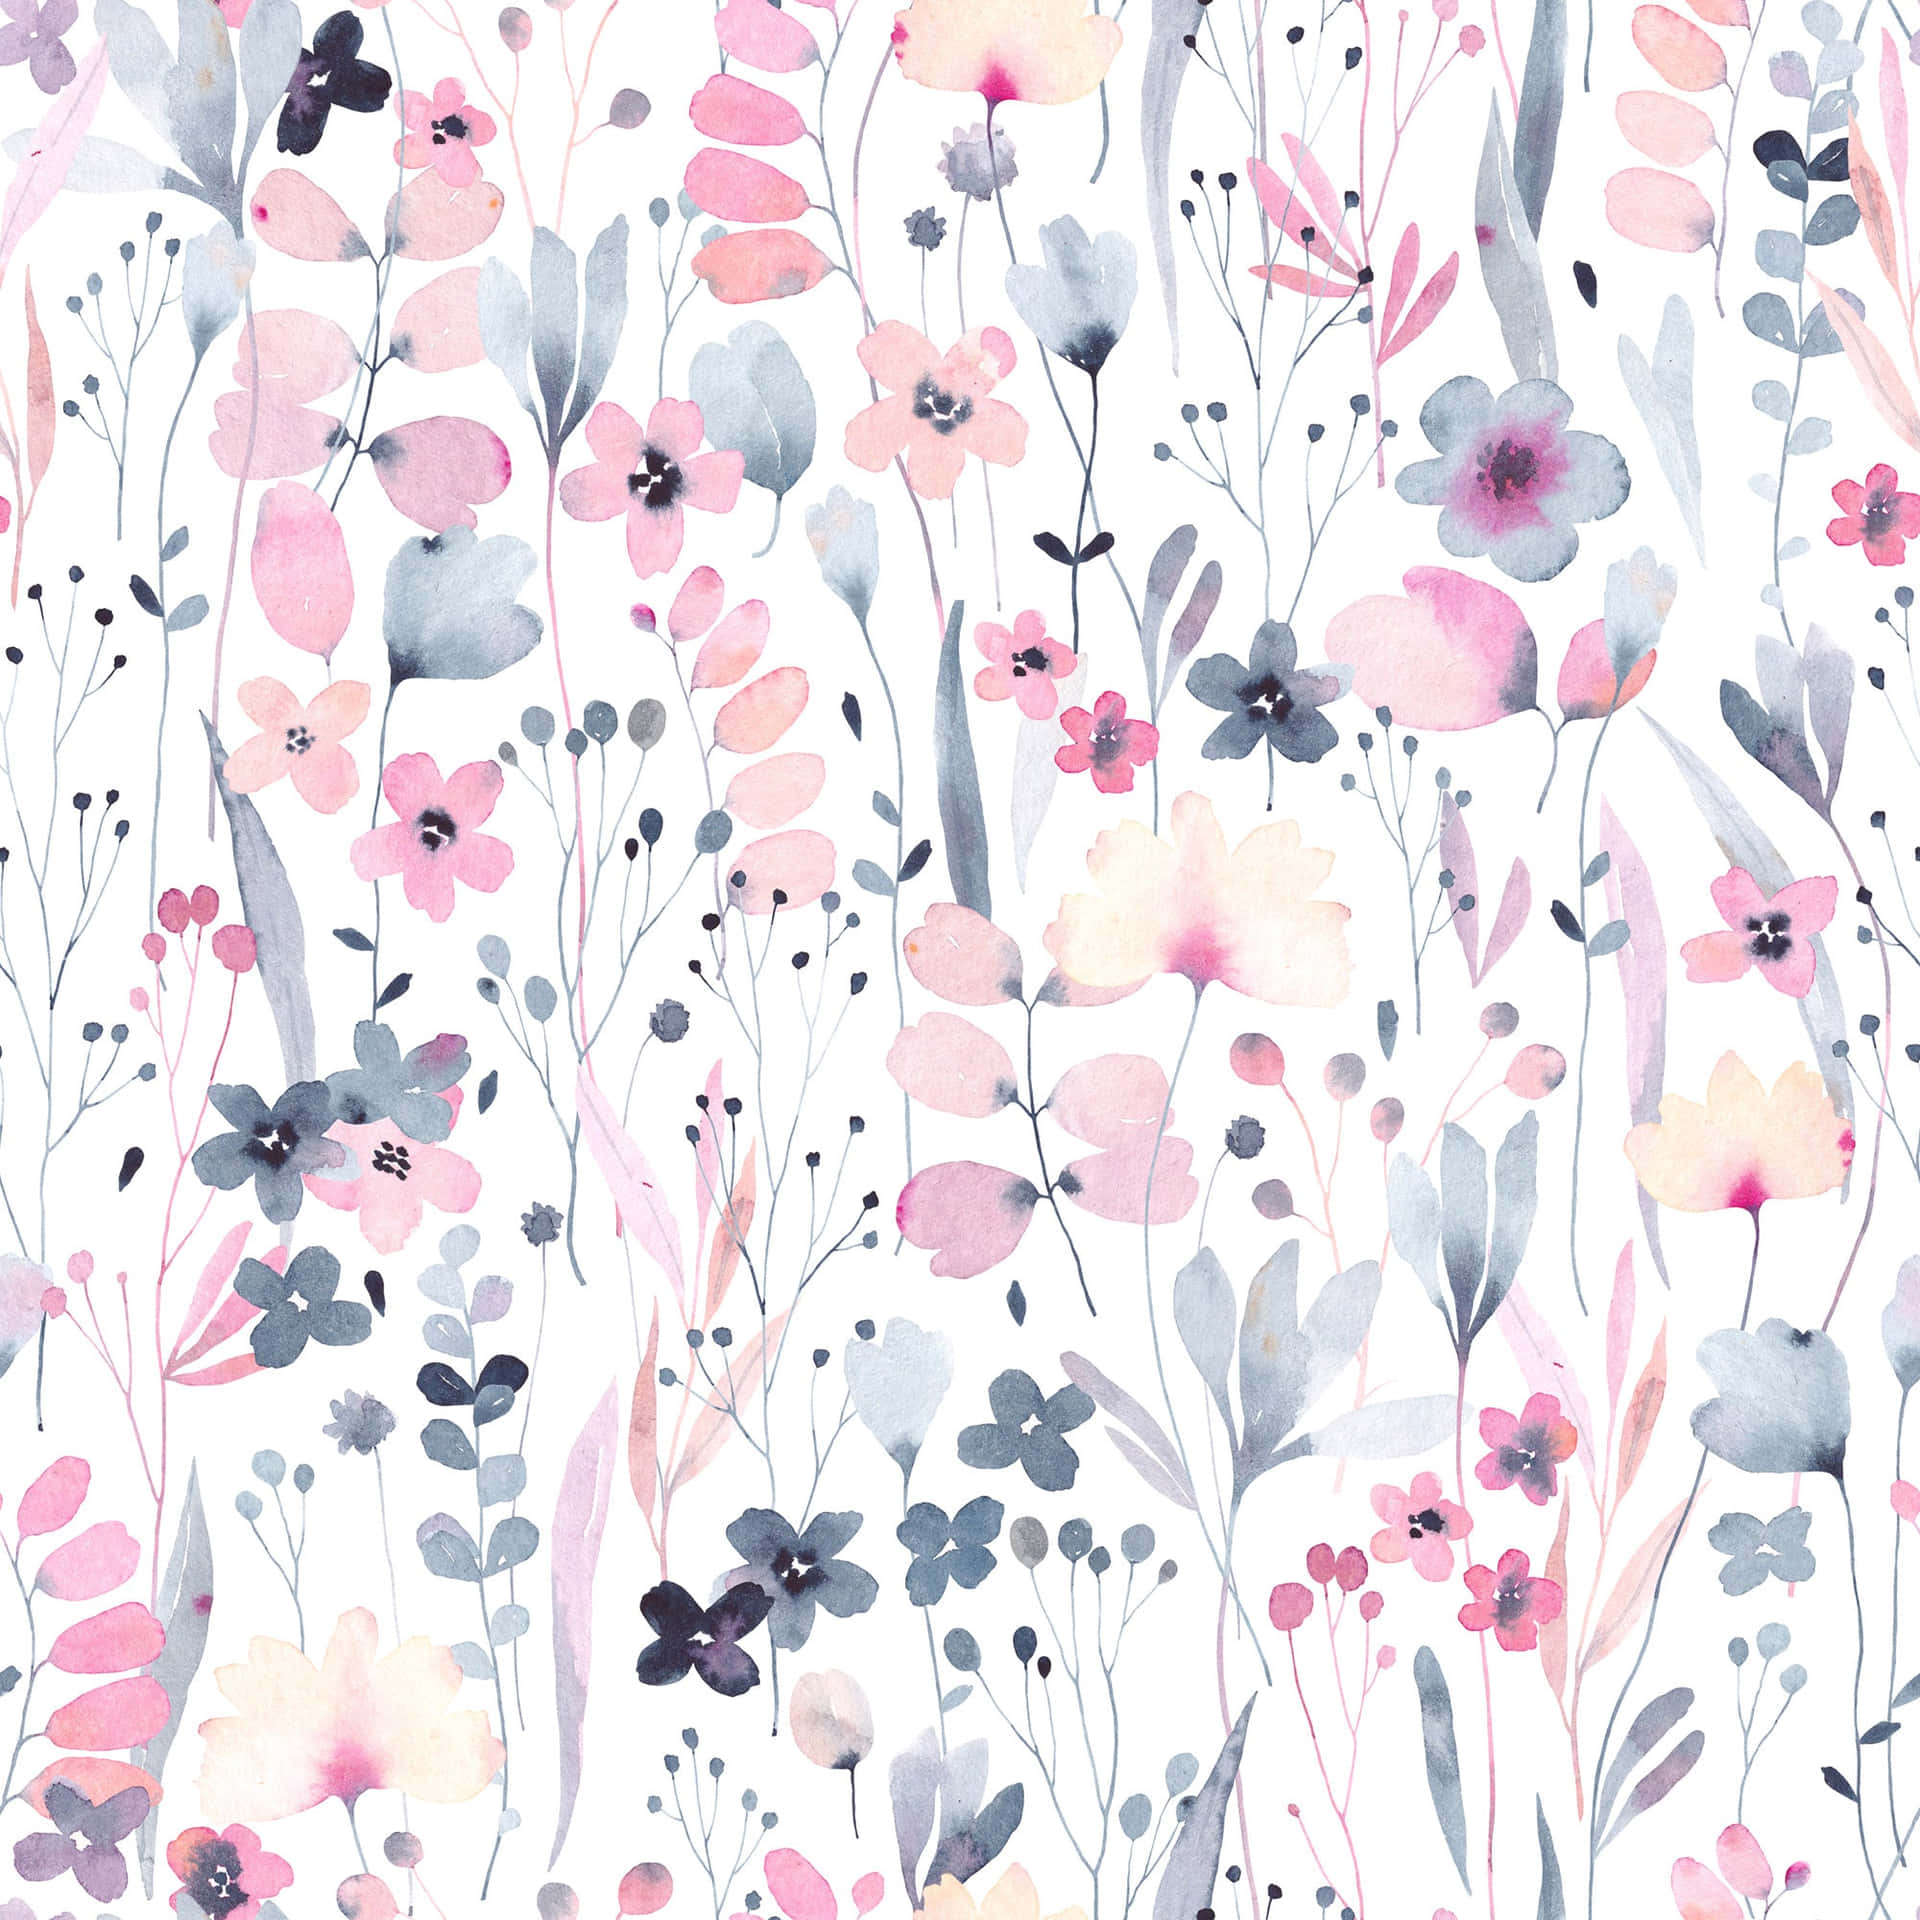 Unelegante Diseño Floral En Rosa Y Blanco Para Llevar Alegría A Cualquier Espacio Fondo de pantalla